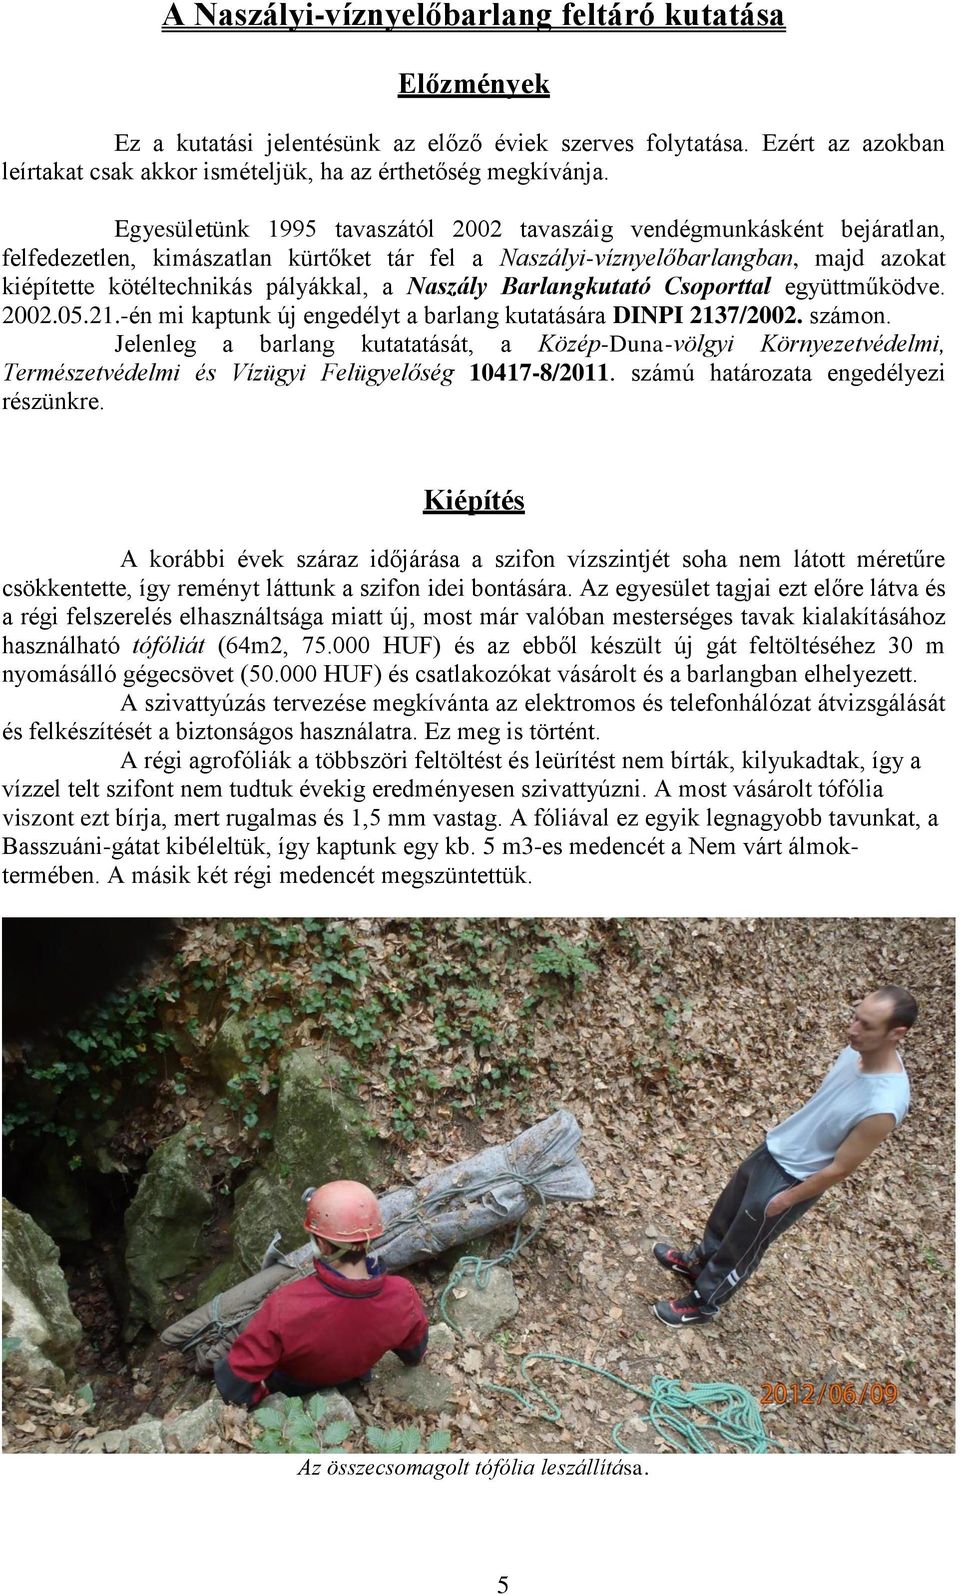 Naszály Barlangkutató Csoporttal együttműködve. 2002.05.21.-én mi kaptunk új engedélyt a barlang kutatására DINPI 2137/2002. számon.